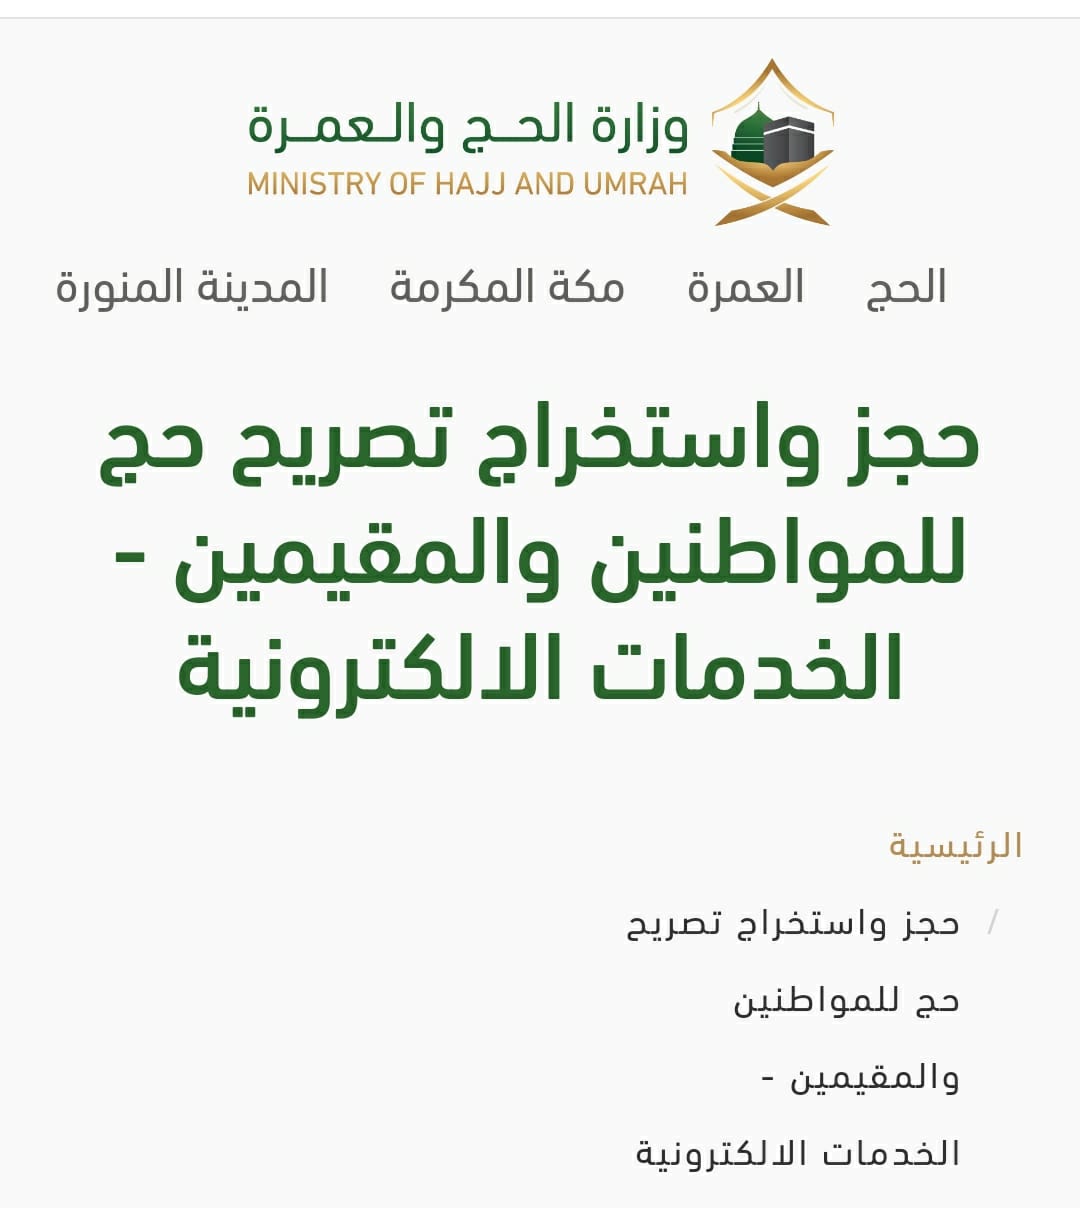 رابط التسجيل للحج من داخل المملكة haj.gov.sa لتسجيل الحج وخدمات التصاريح 